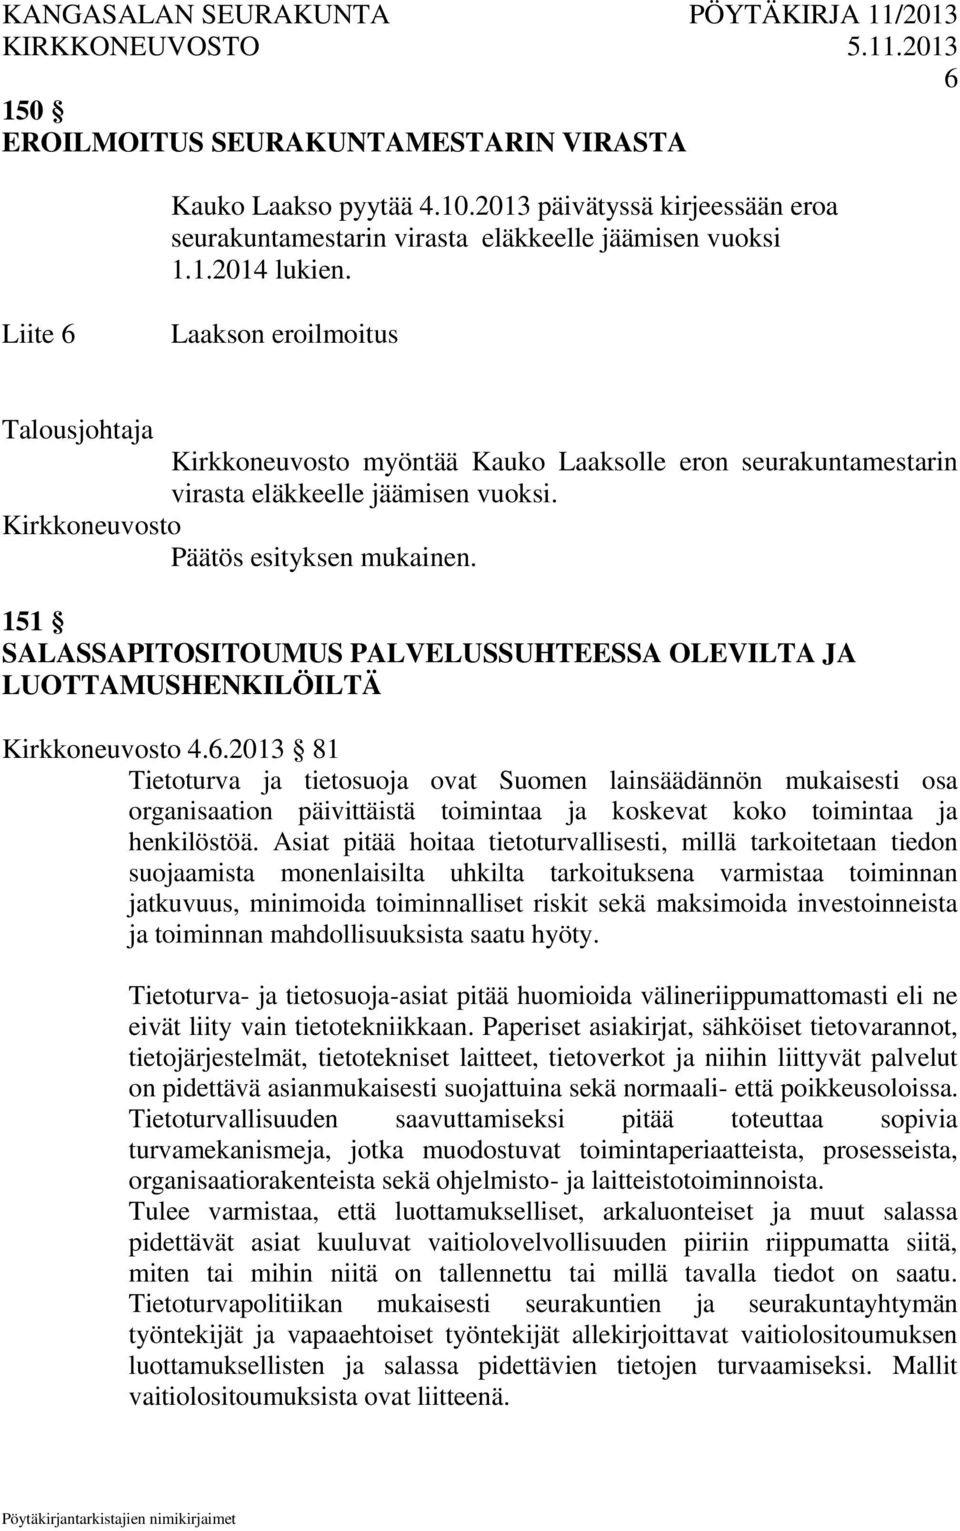 151 SALASSAPITOSITOUMUS PALVELUSSUHTEESSA OLEVILTA JA LUOTTAMUSHENKILÖILTÄ 4.6.